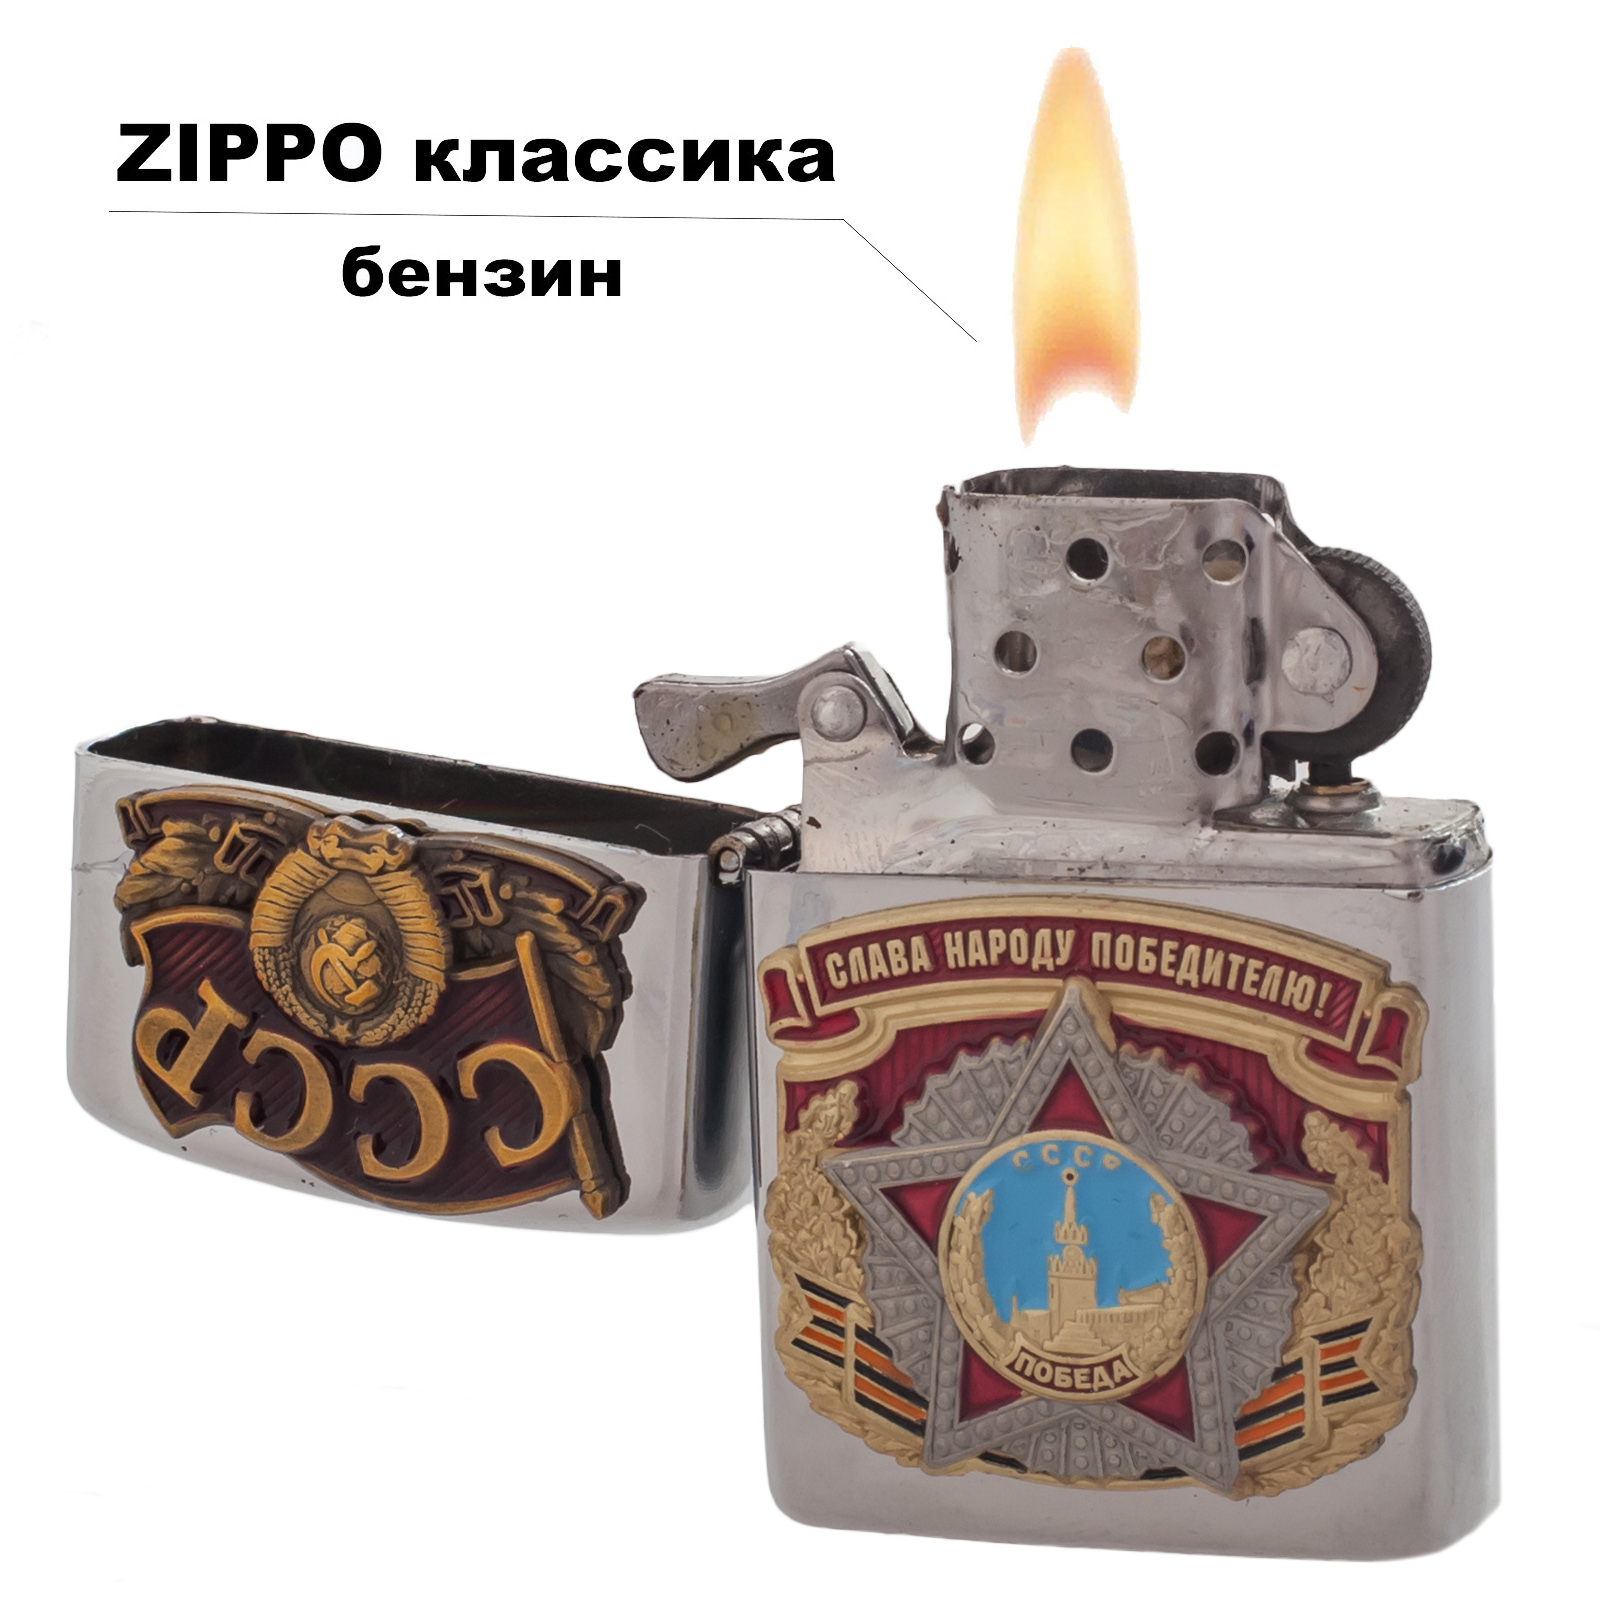 Подарочная бензиновая зажигалка "Слава народу победителю!" 